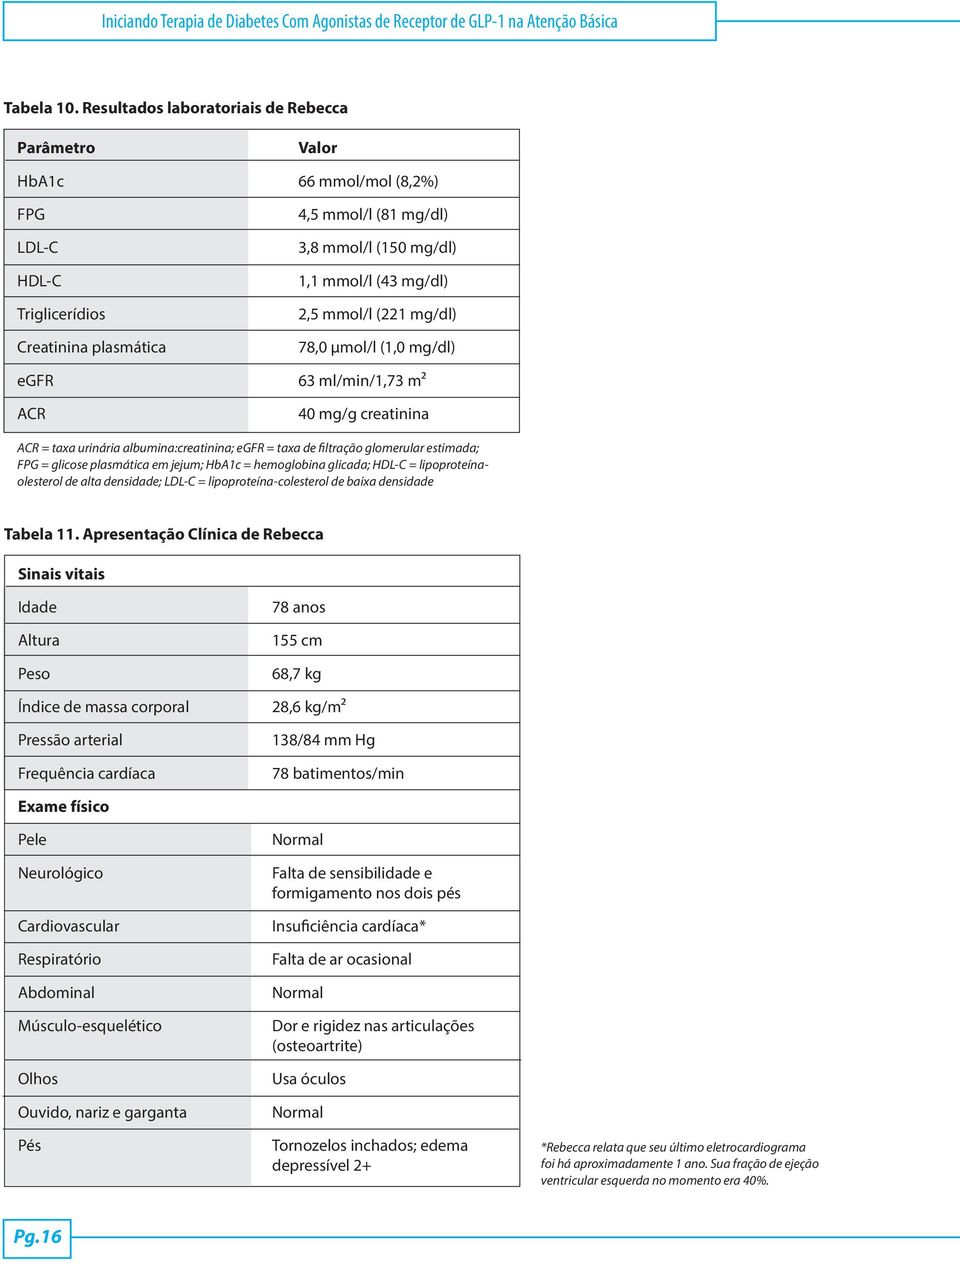 2,5 mmol/l (221 mg/dl) 78,0 µmol/l (1,0 mg/dl) egfr 63 ml/min/1,73 m² ACR 40 mg/g creatinina ACR = taxa urinária albumina:creatinina; egfr = taxa de filtração glomerular estimada; FPG = glicose